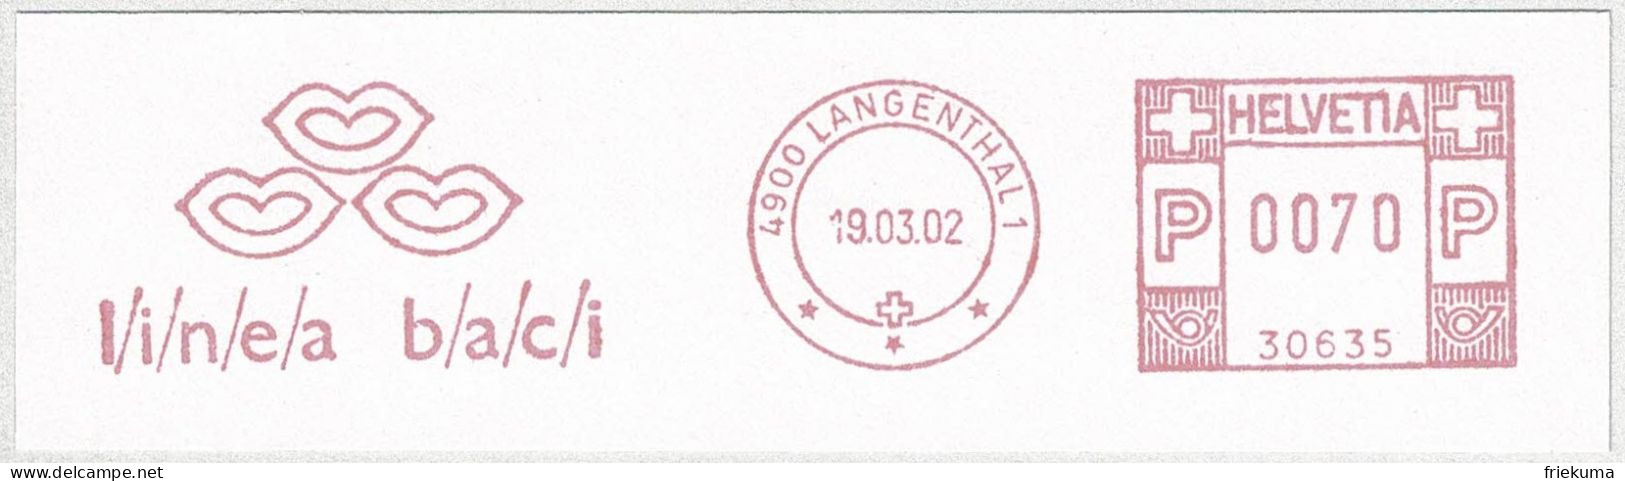 Schweiz / Helvetia 2002, Freistempel / EMA / Meterstamp Peyer + Co Langenthal, Bekleidung, Schuhe  - Postage Meters